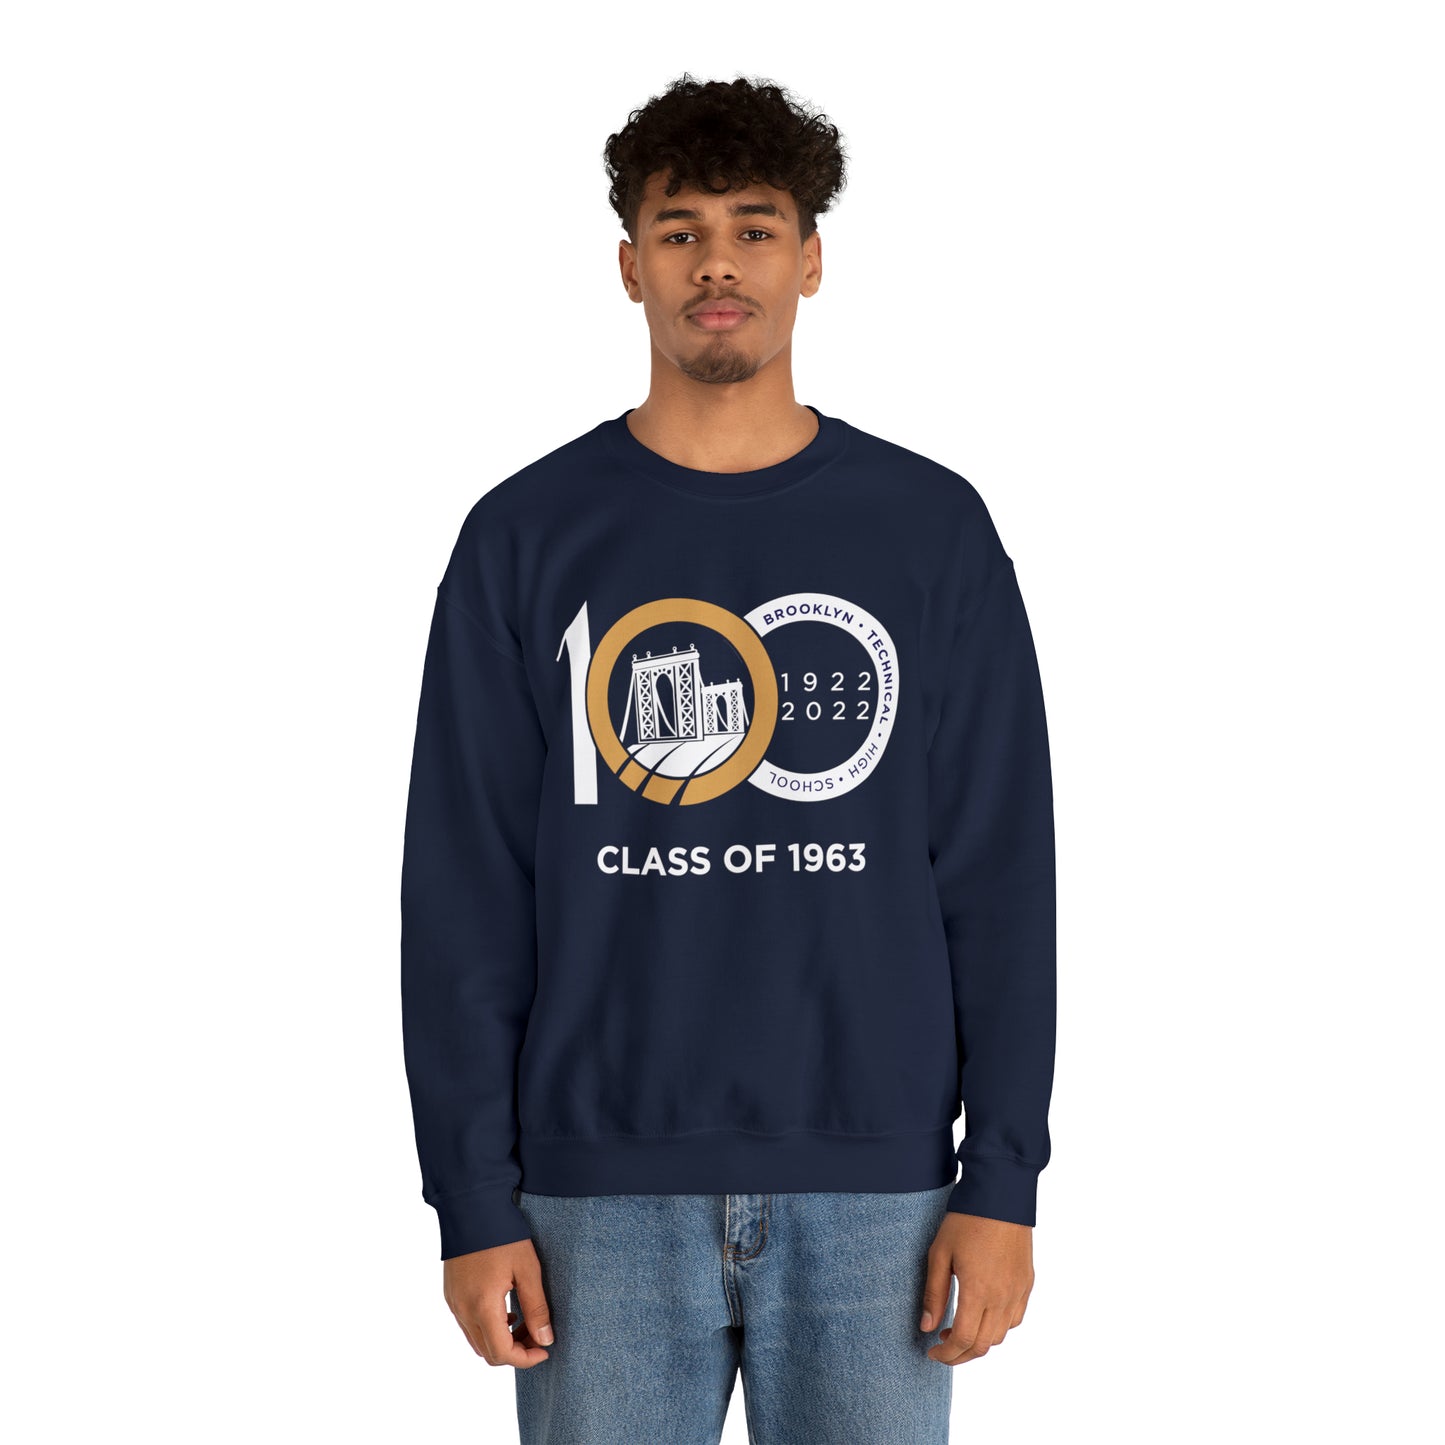 Centennial - Men's Heavy Blend Crewneck Sweatshirt - Class Of 1963